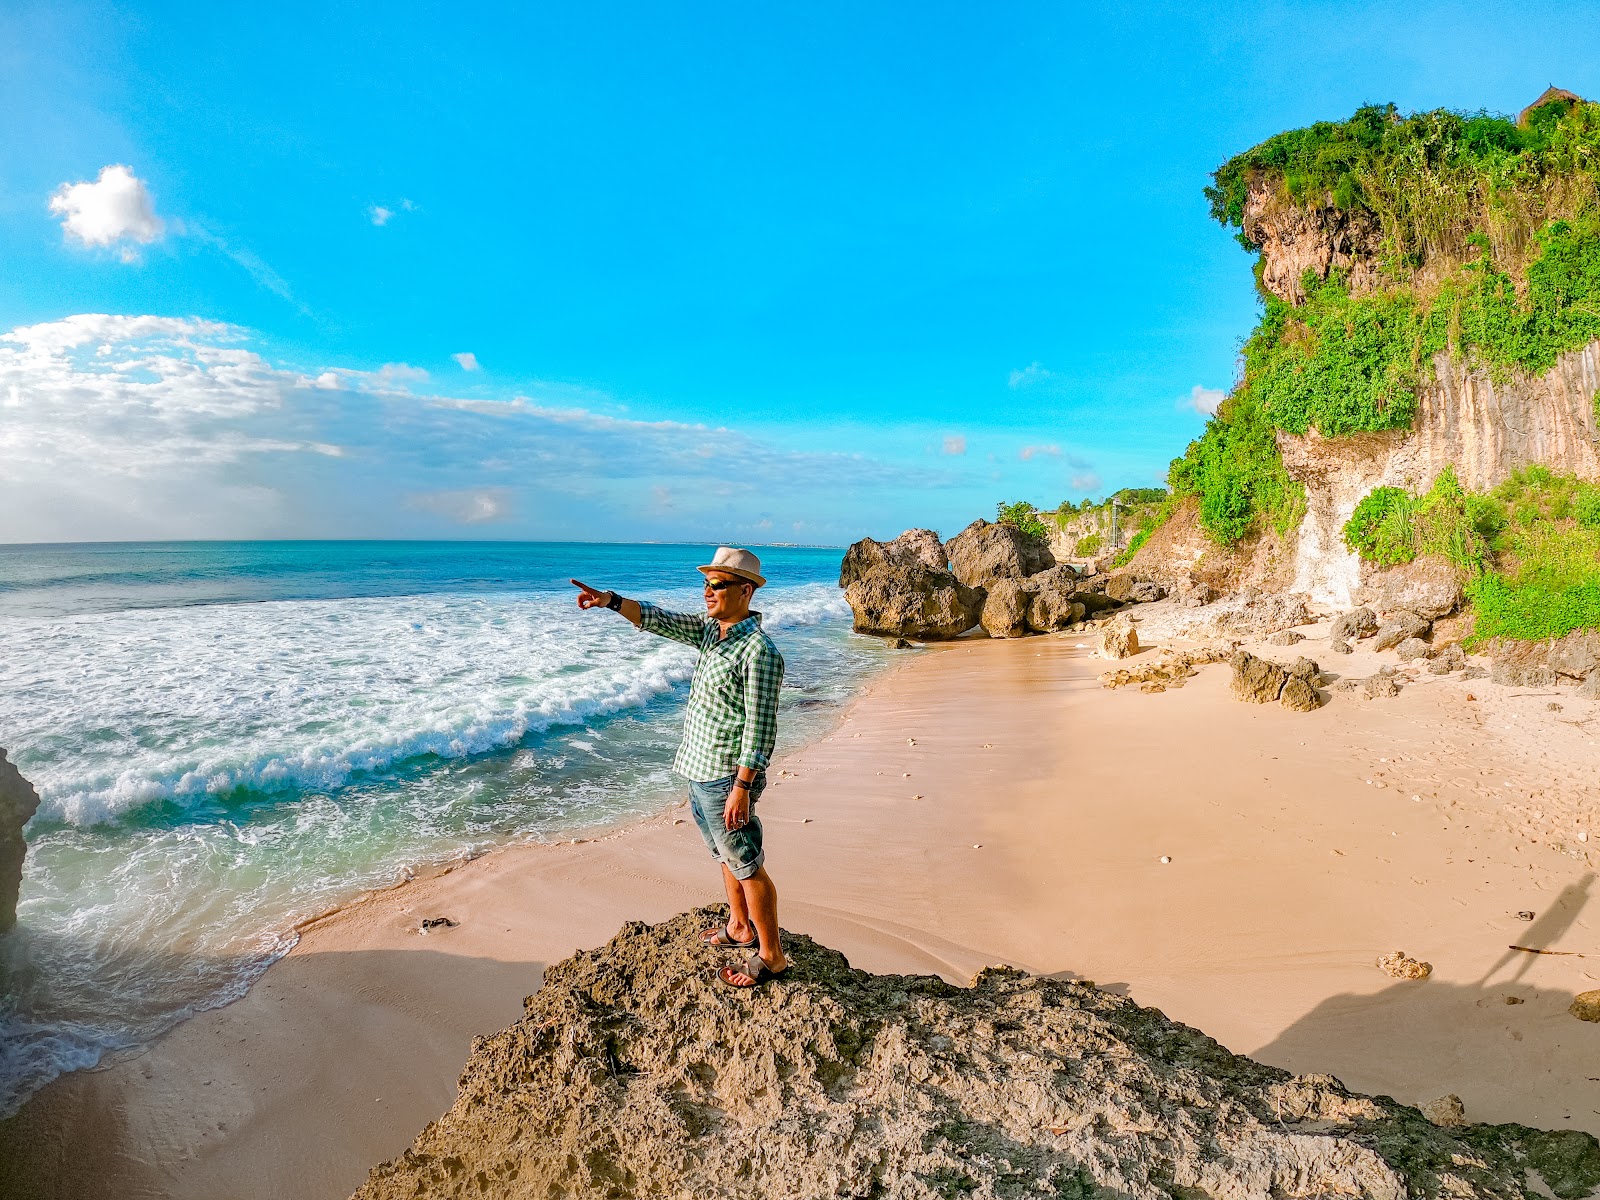 Fotografie cu Batu Layah cu o suprafață de nisip strălucitor